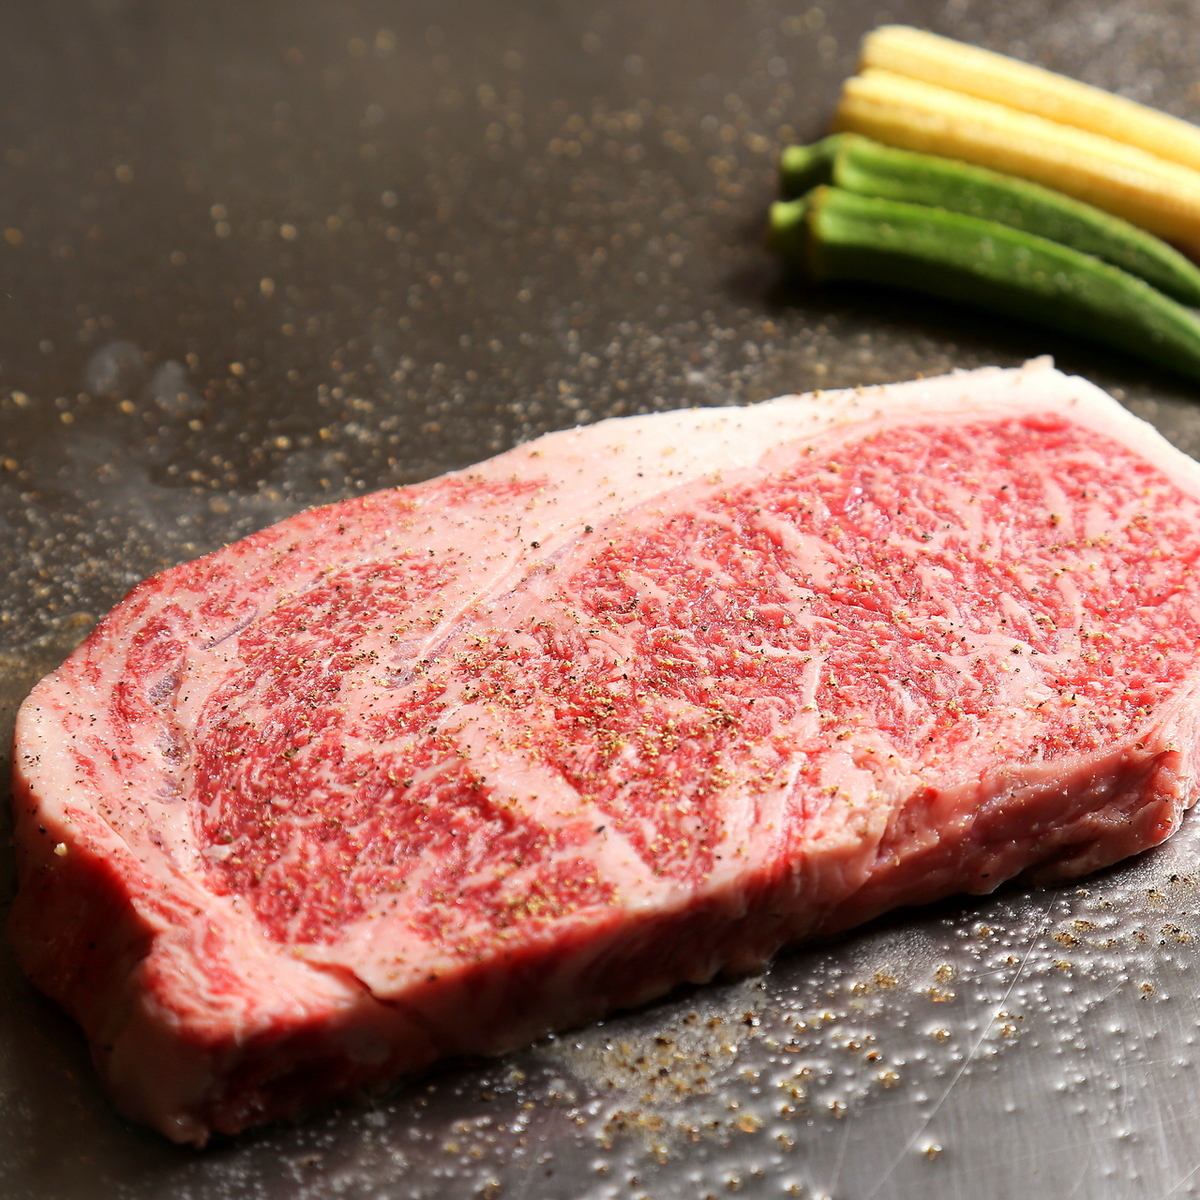 아오이 수염으로 준비하는 고기는 모두 엄선 매입의 히로시마 A4 와규.